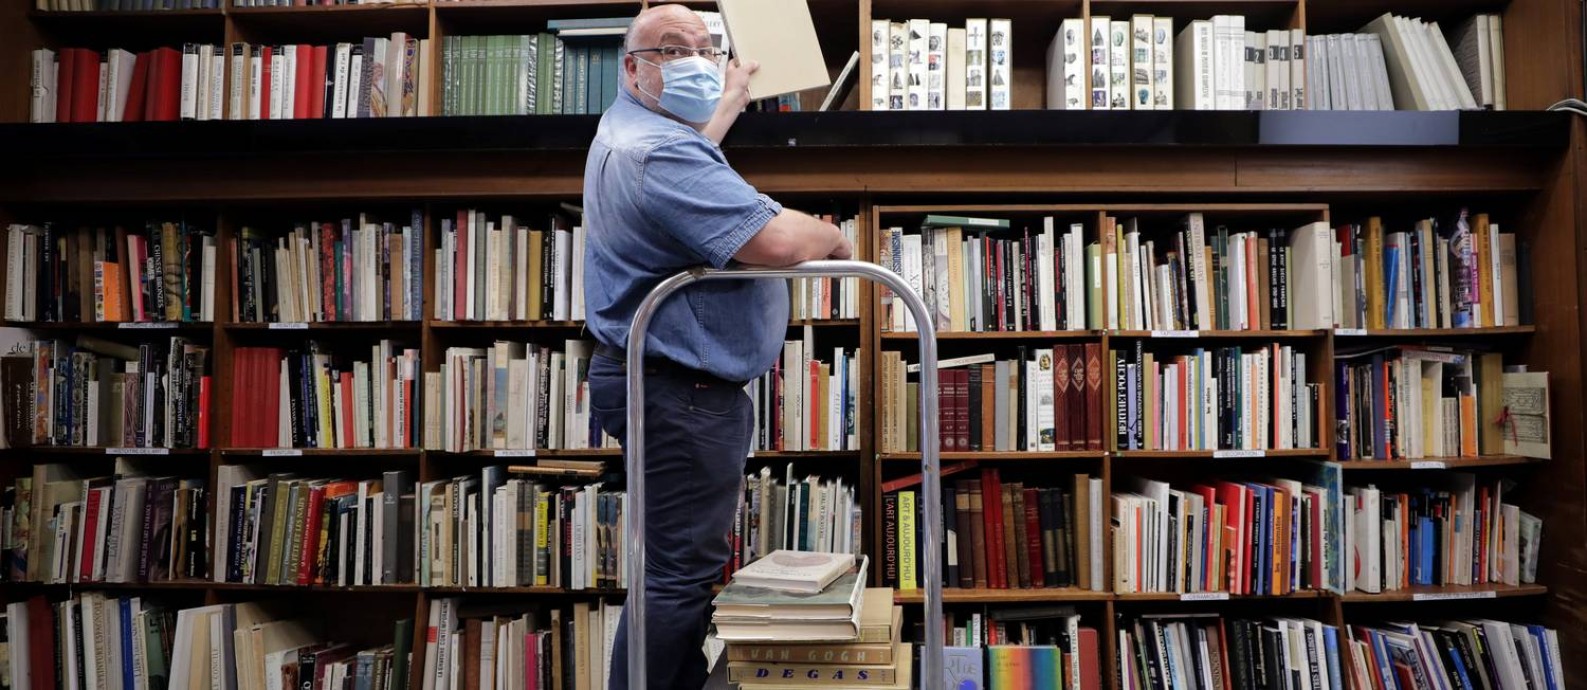 O livreiro Philippe Seyrat usa máscara protetora na livraria La Sorbonne, em Nice, na França, onde o comércio começa a reabrir aos poucos Foto: ERIC GAILLARD / REUTERS